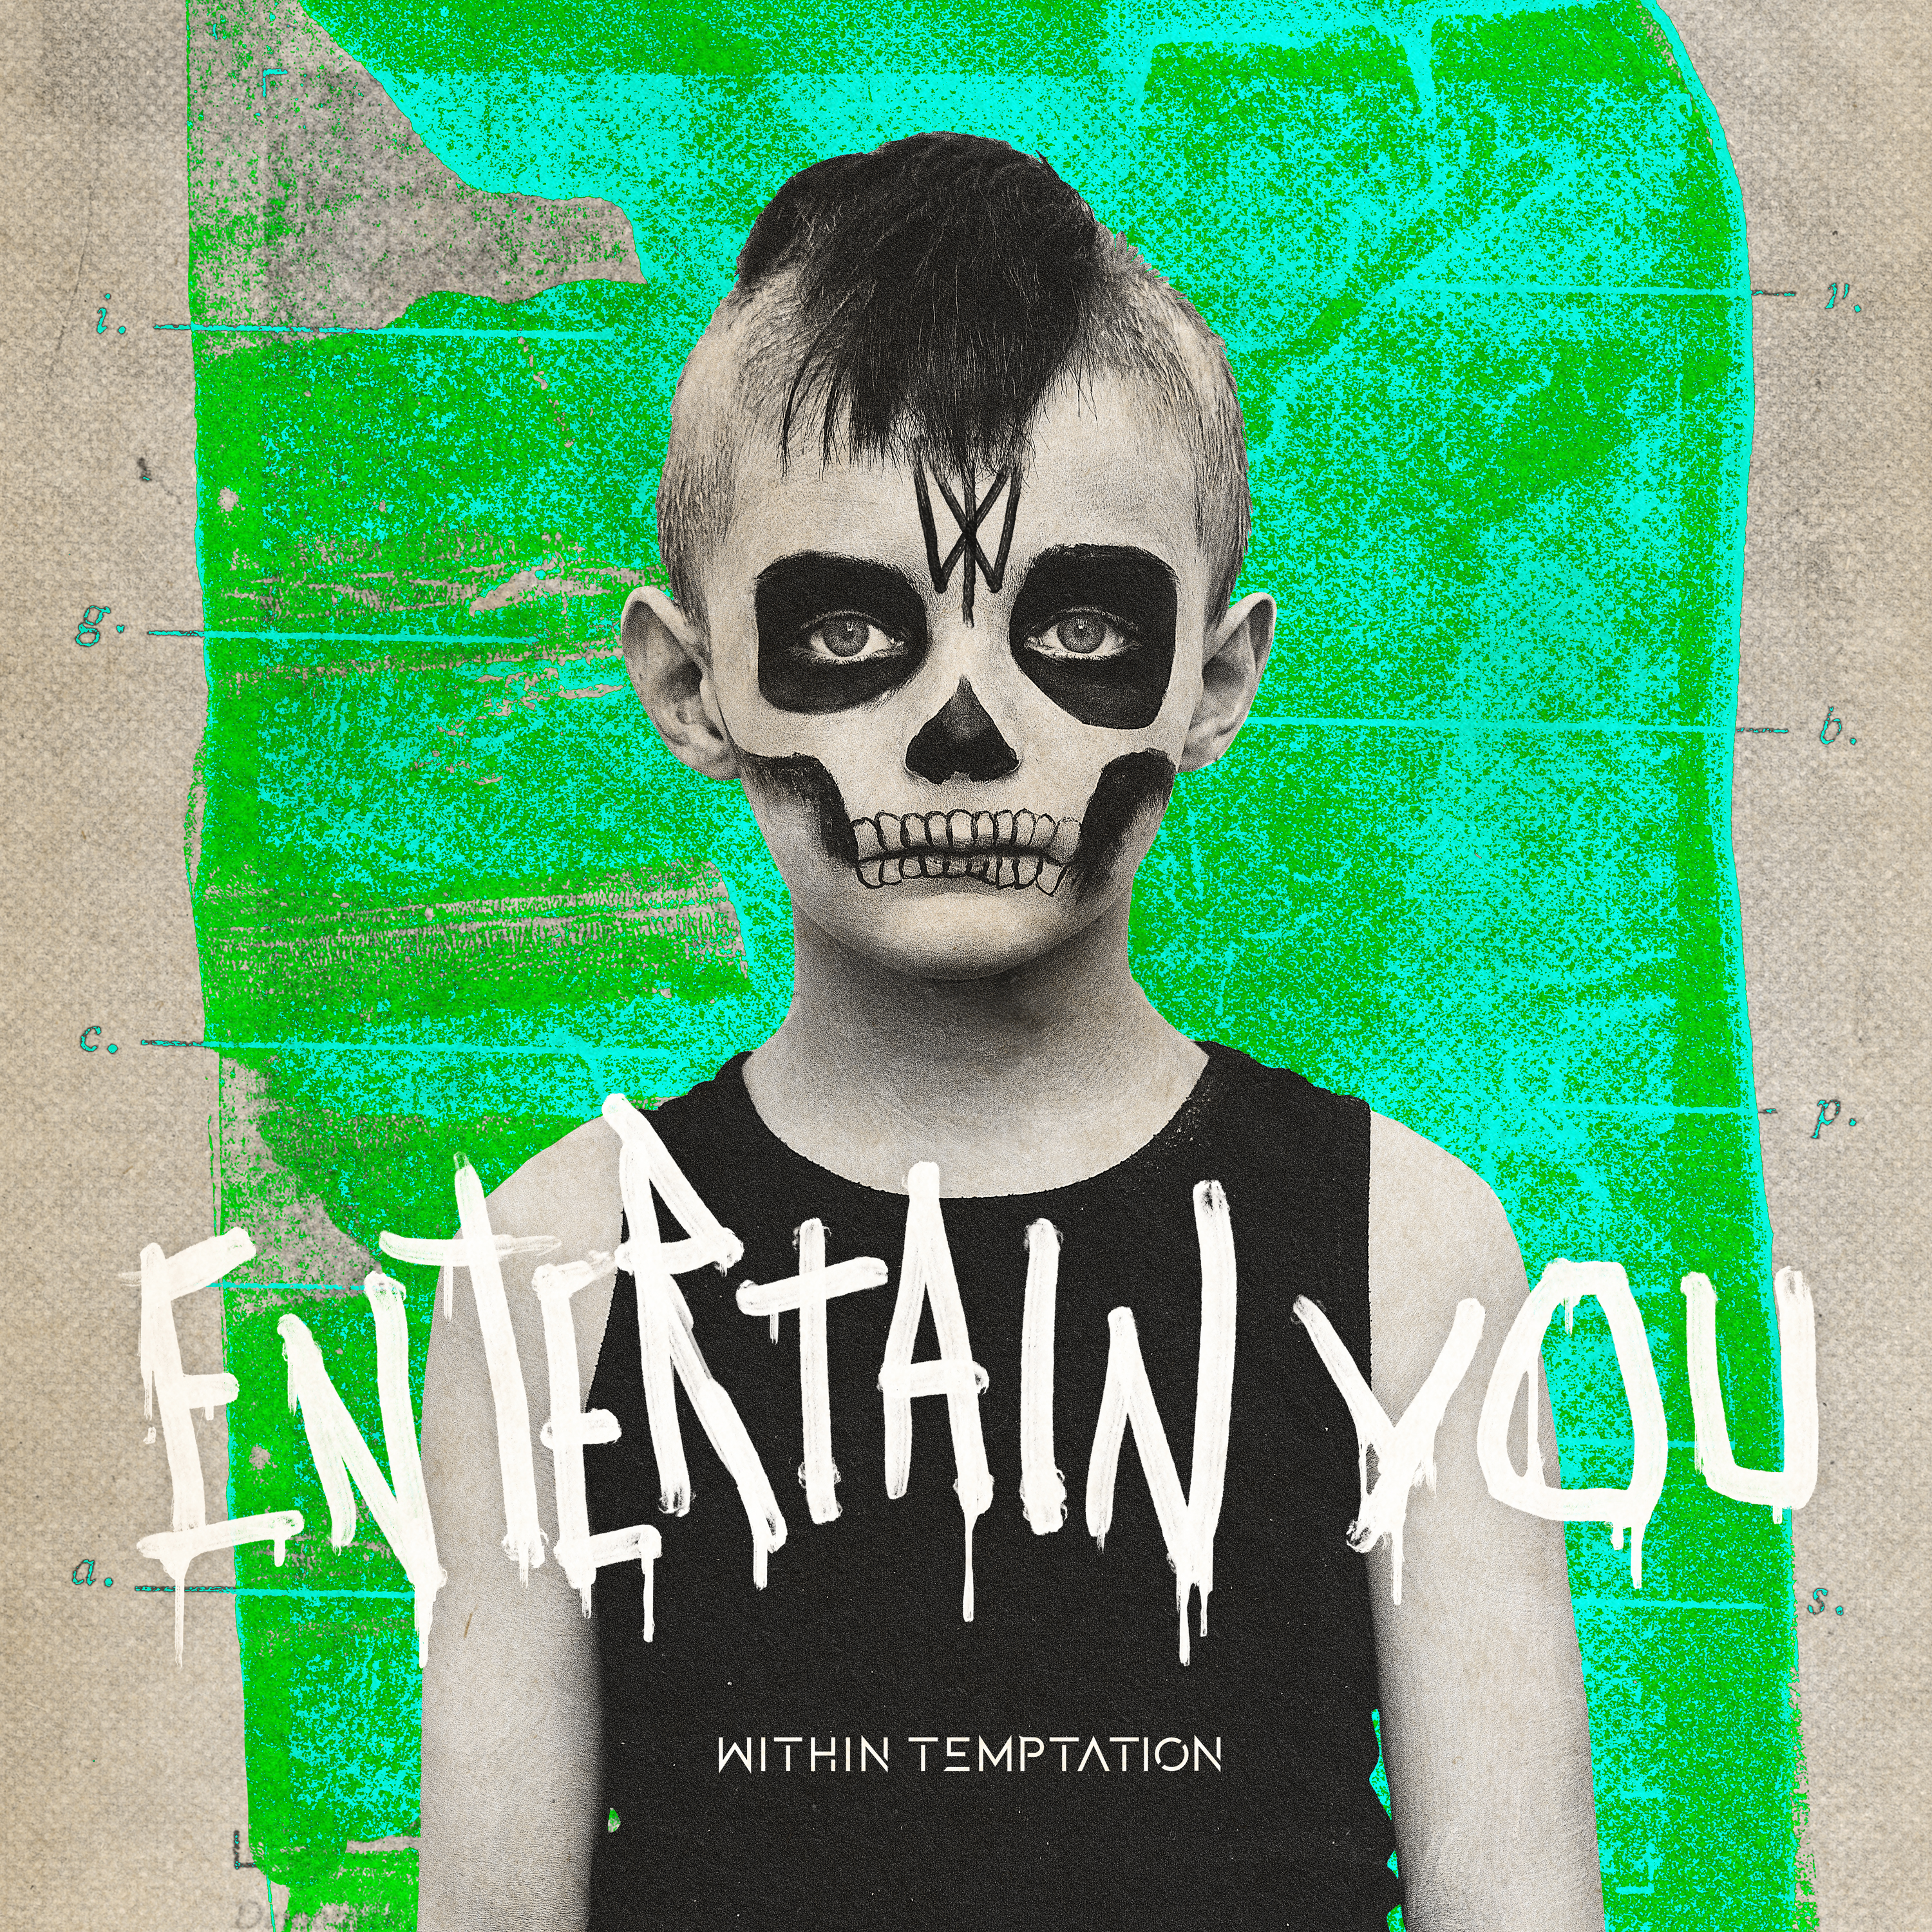 News: Within Temptation veröffentlichen brandneuen Song ‘Entertain You’ auf ihrem eigenen Label Temptation Entertainment BV